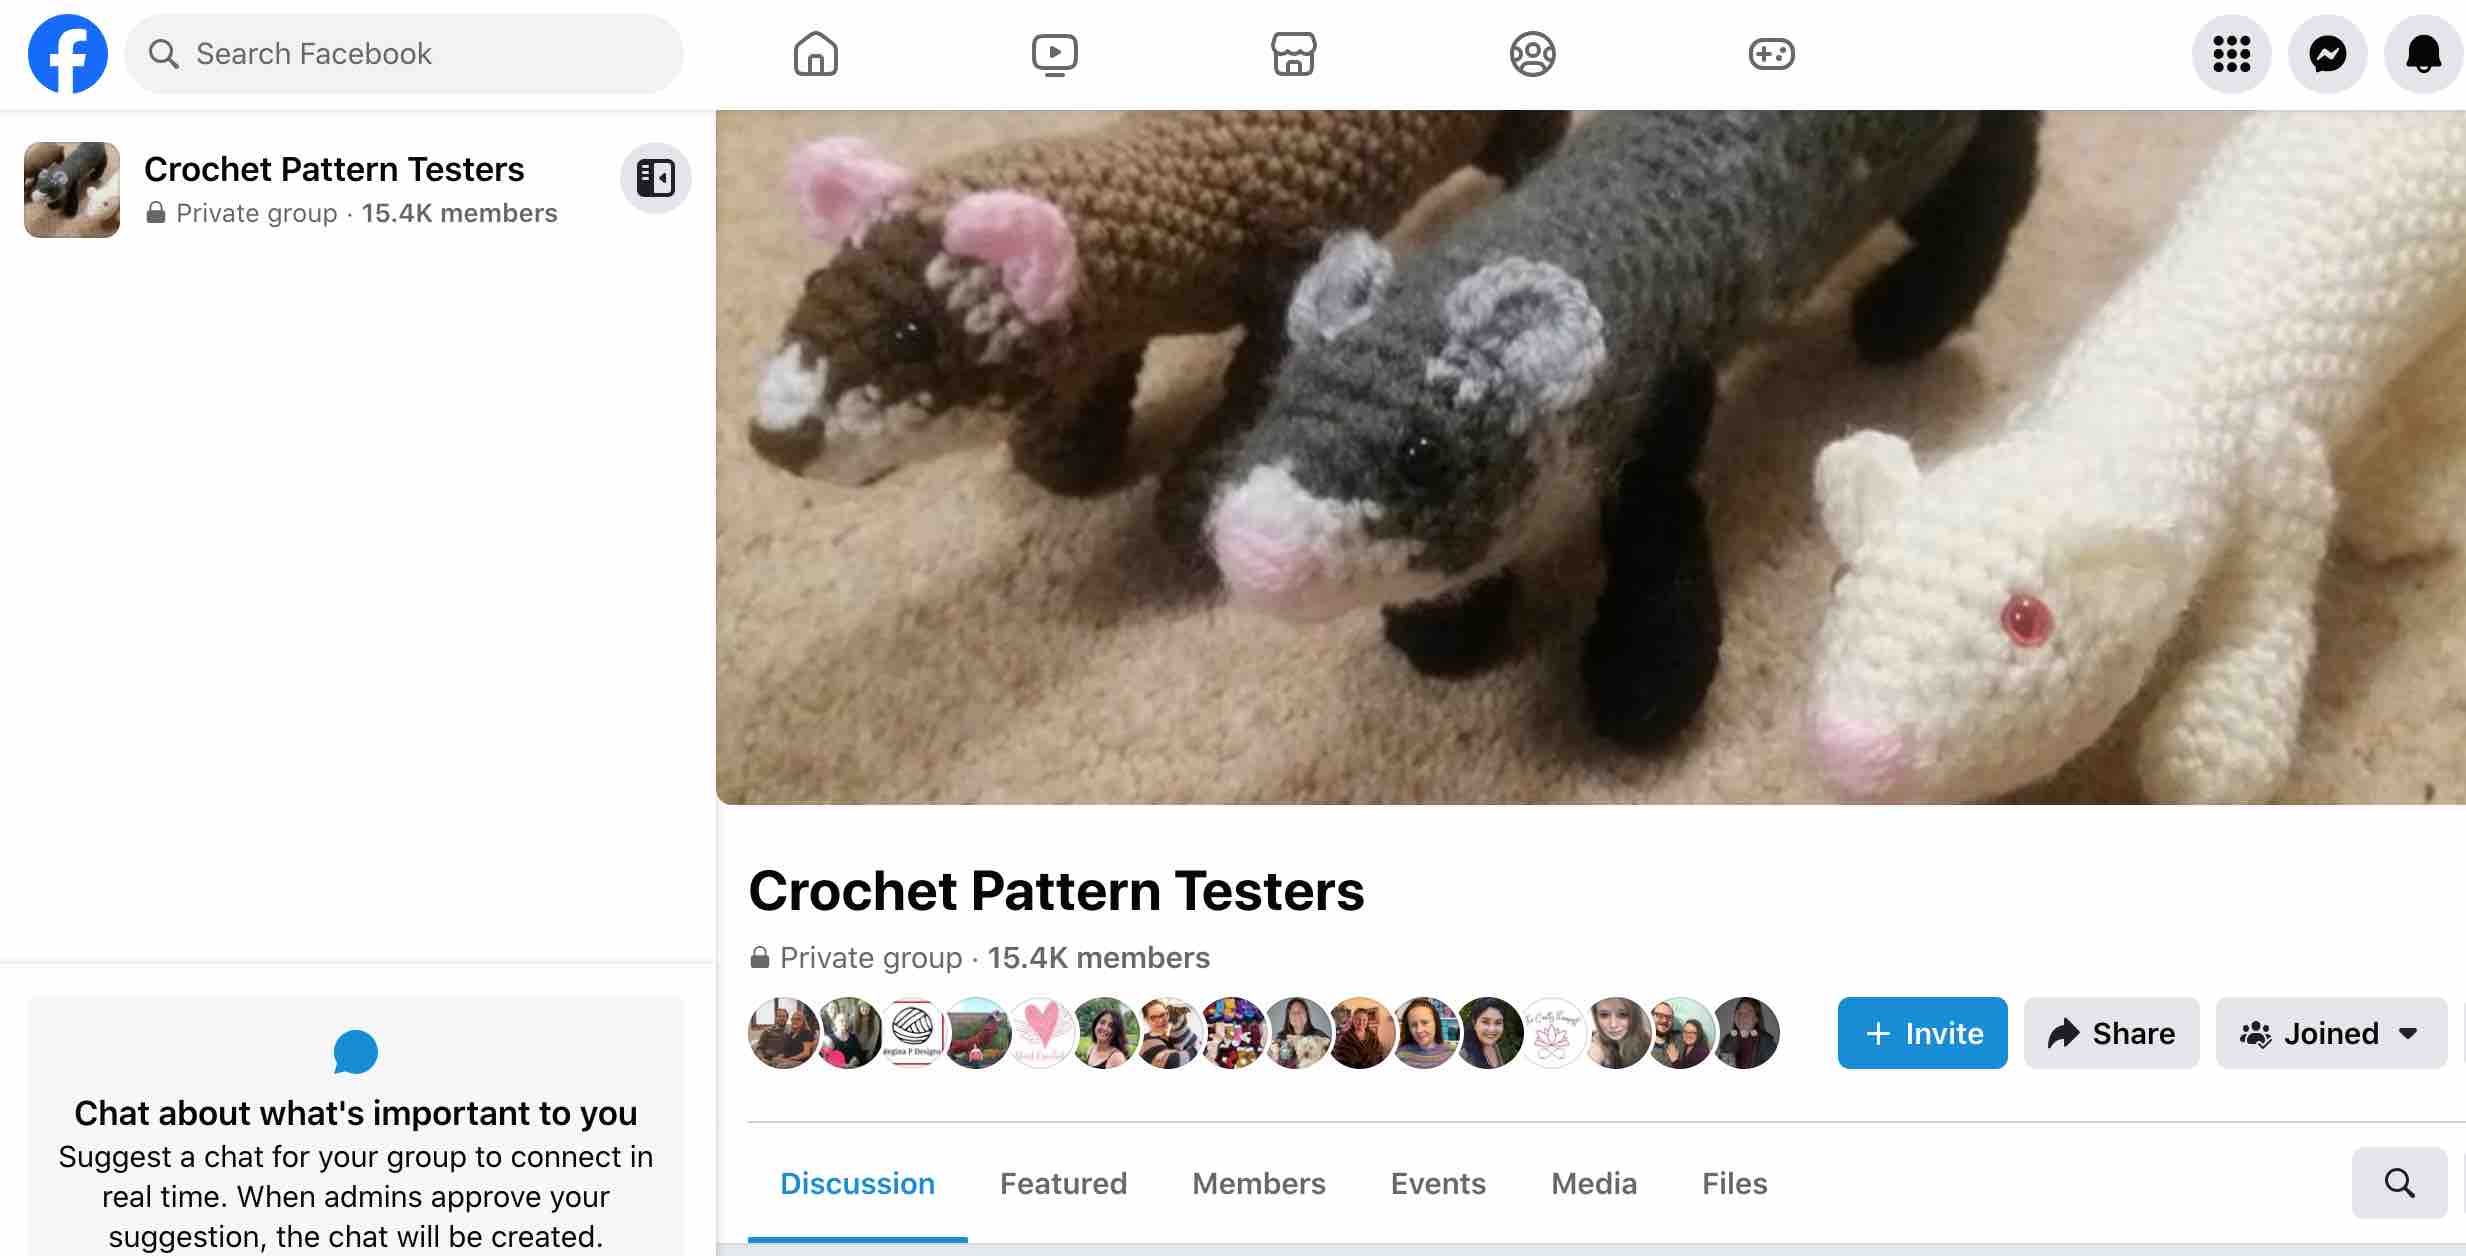 Crochet Pattern Testers